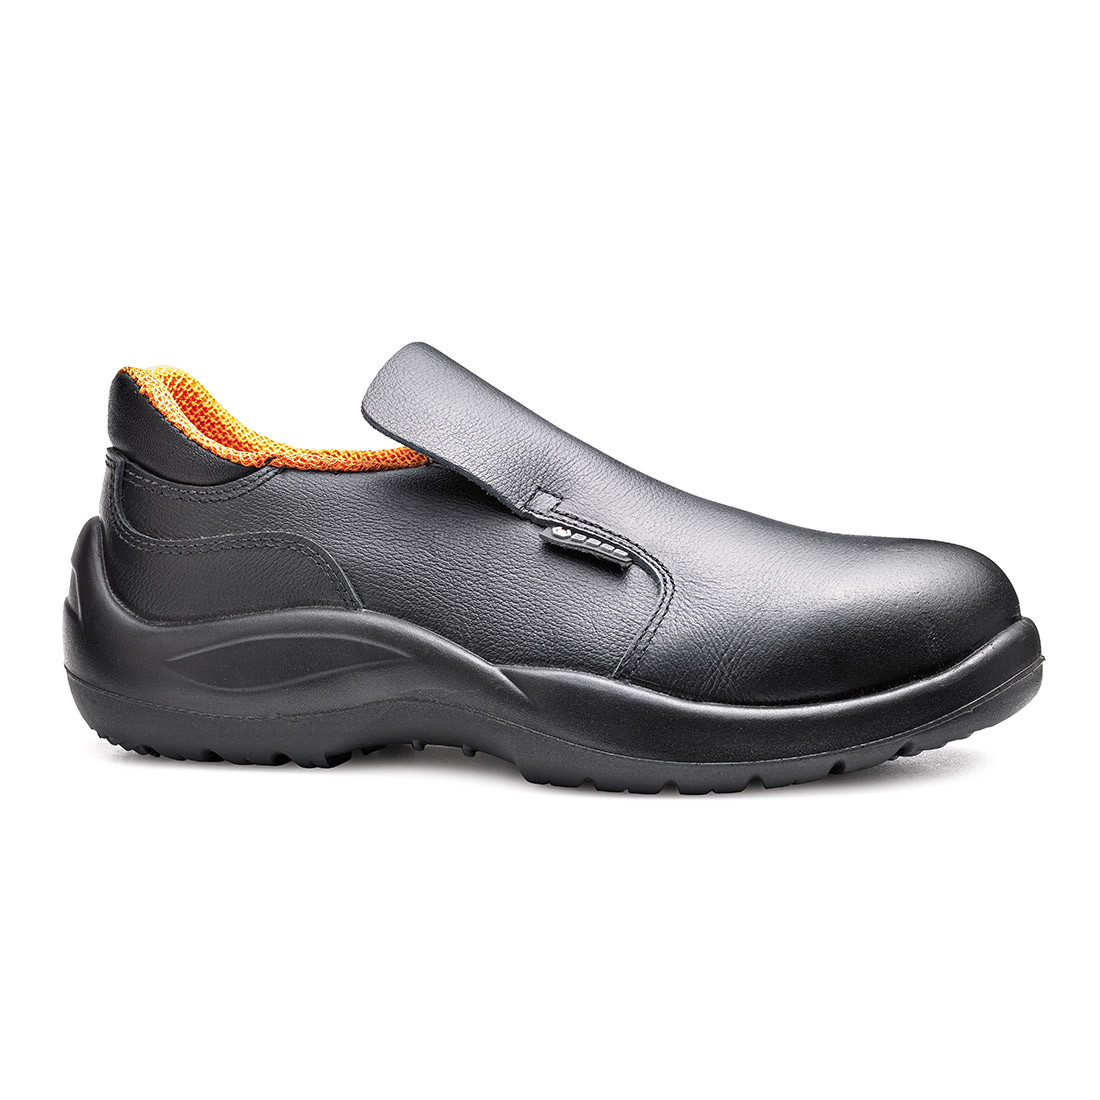 Pantofi Cloro S2 SRC - Incaltaminte de protectie